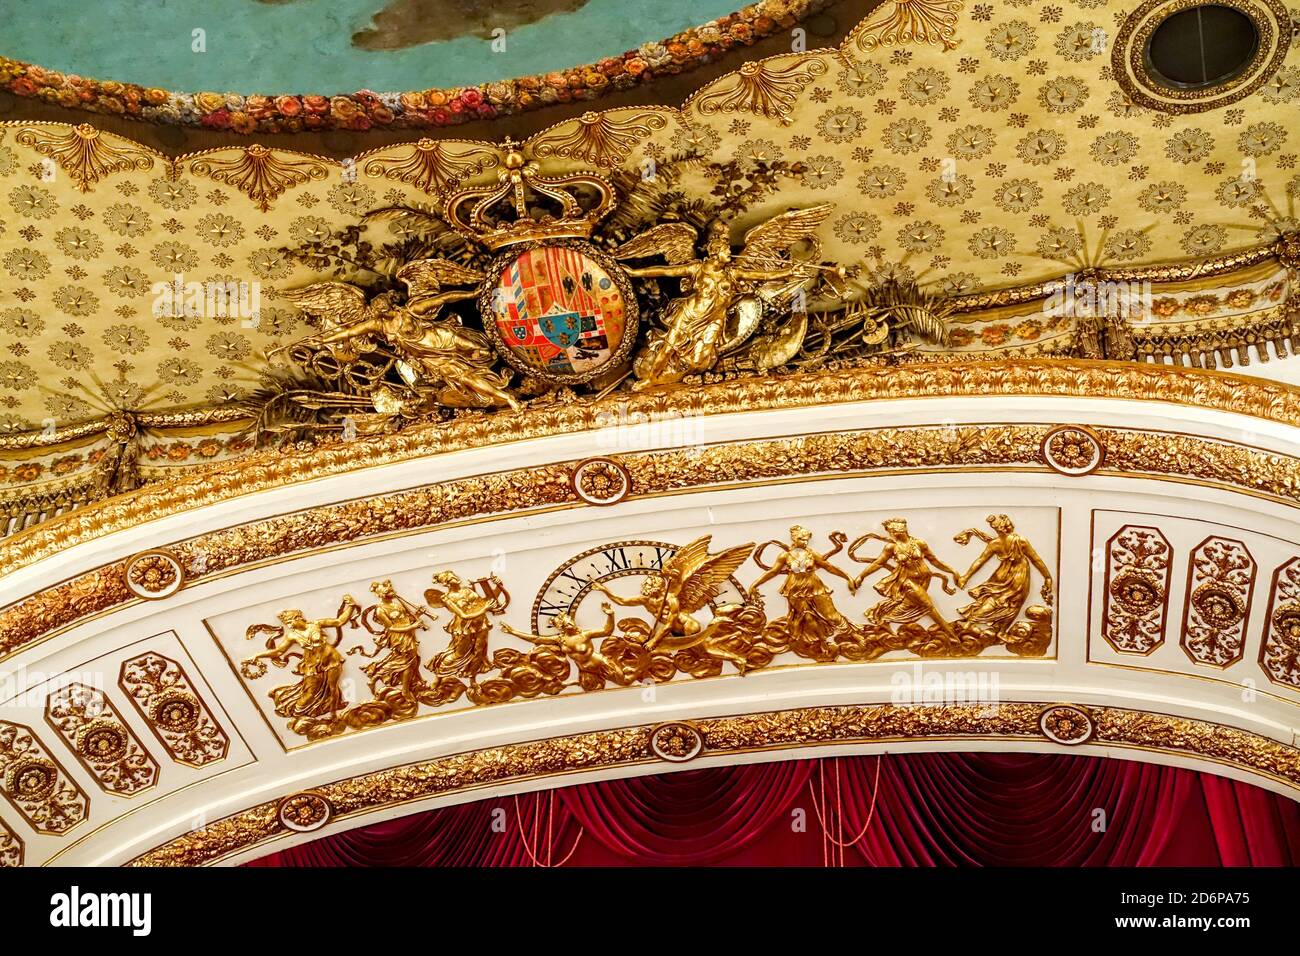 Le Teatro Reale di San Carlo (Théâtre Royal de Saint Charles), la monarchie Bourbon, naples italie, armoiries royales Banque D'Images